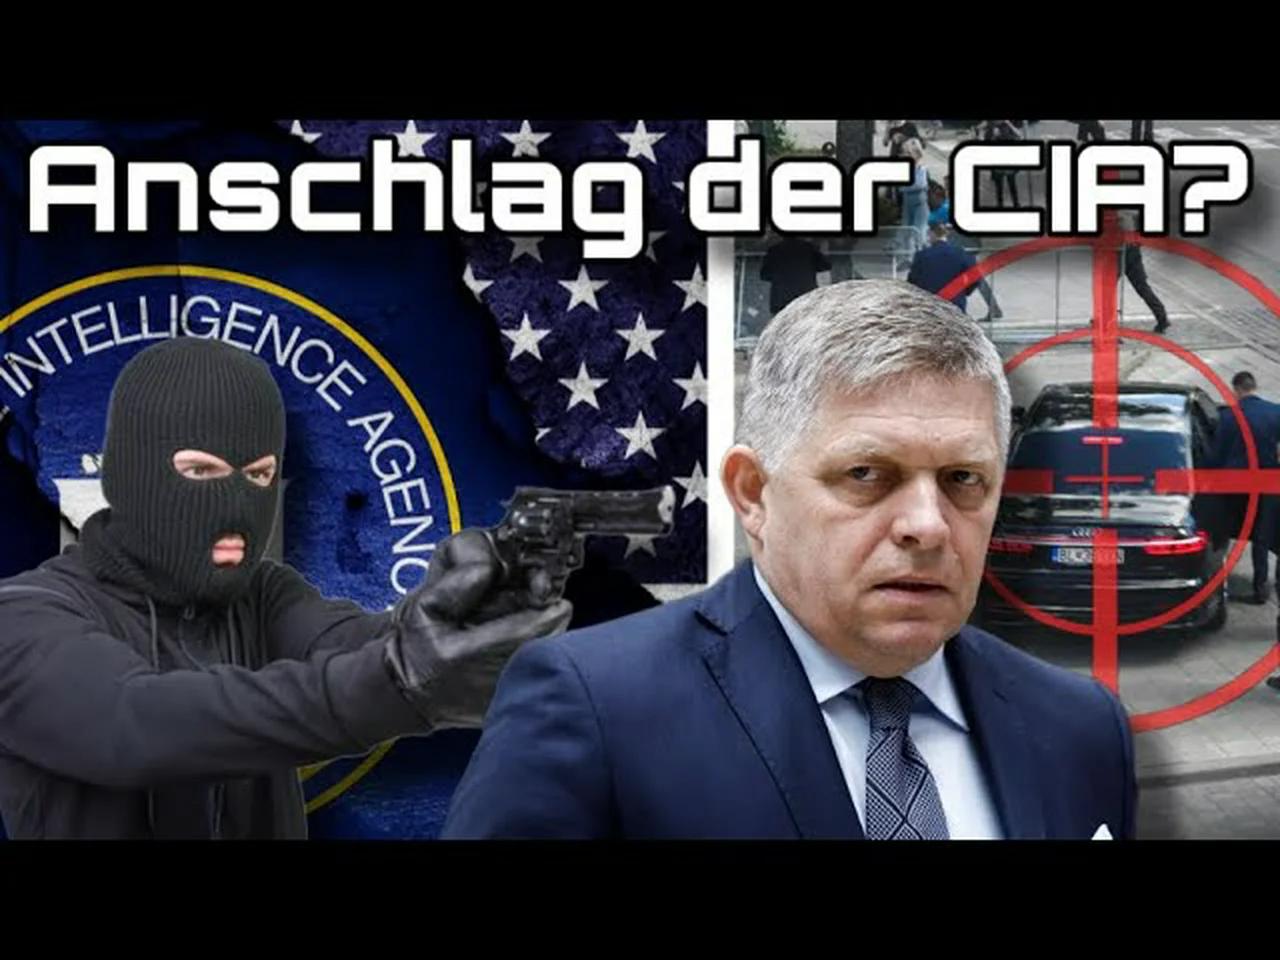 Schüsse auf Fico: Ein MK Ultra-Attentat der CIA?